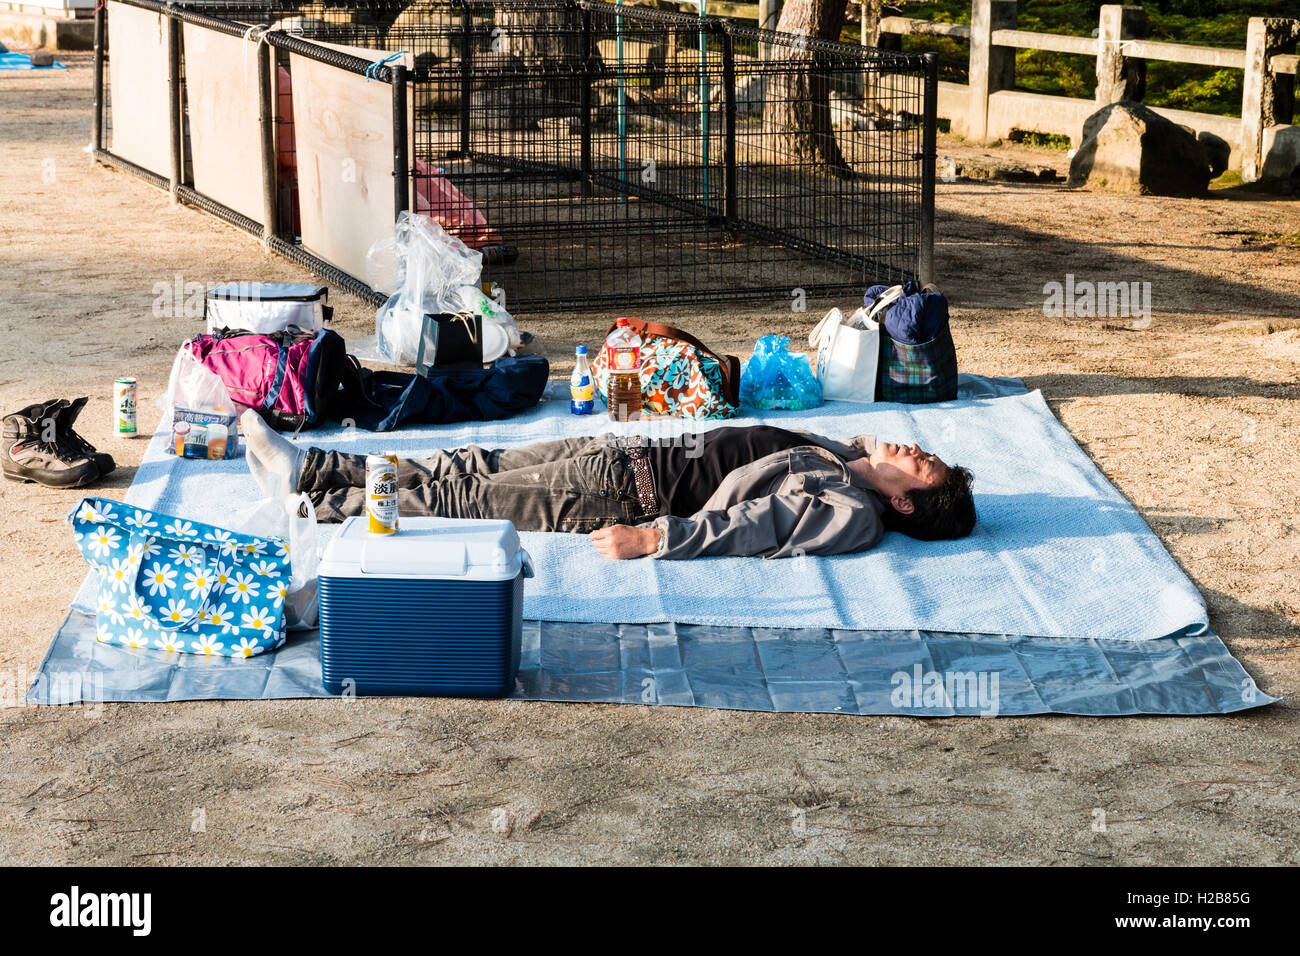 El Japón. Parque Japonés con hombre dormido sobre láminas de plástico azules en el sol, teniendo lugar por la oficina parte de flor de cerezo que se celebrará más adelante. Foto de stock